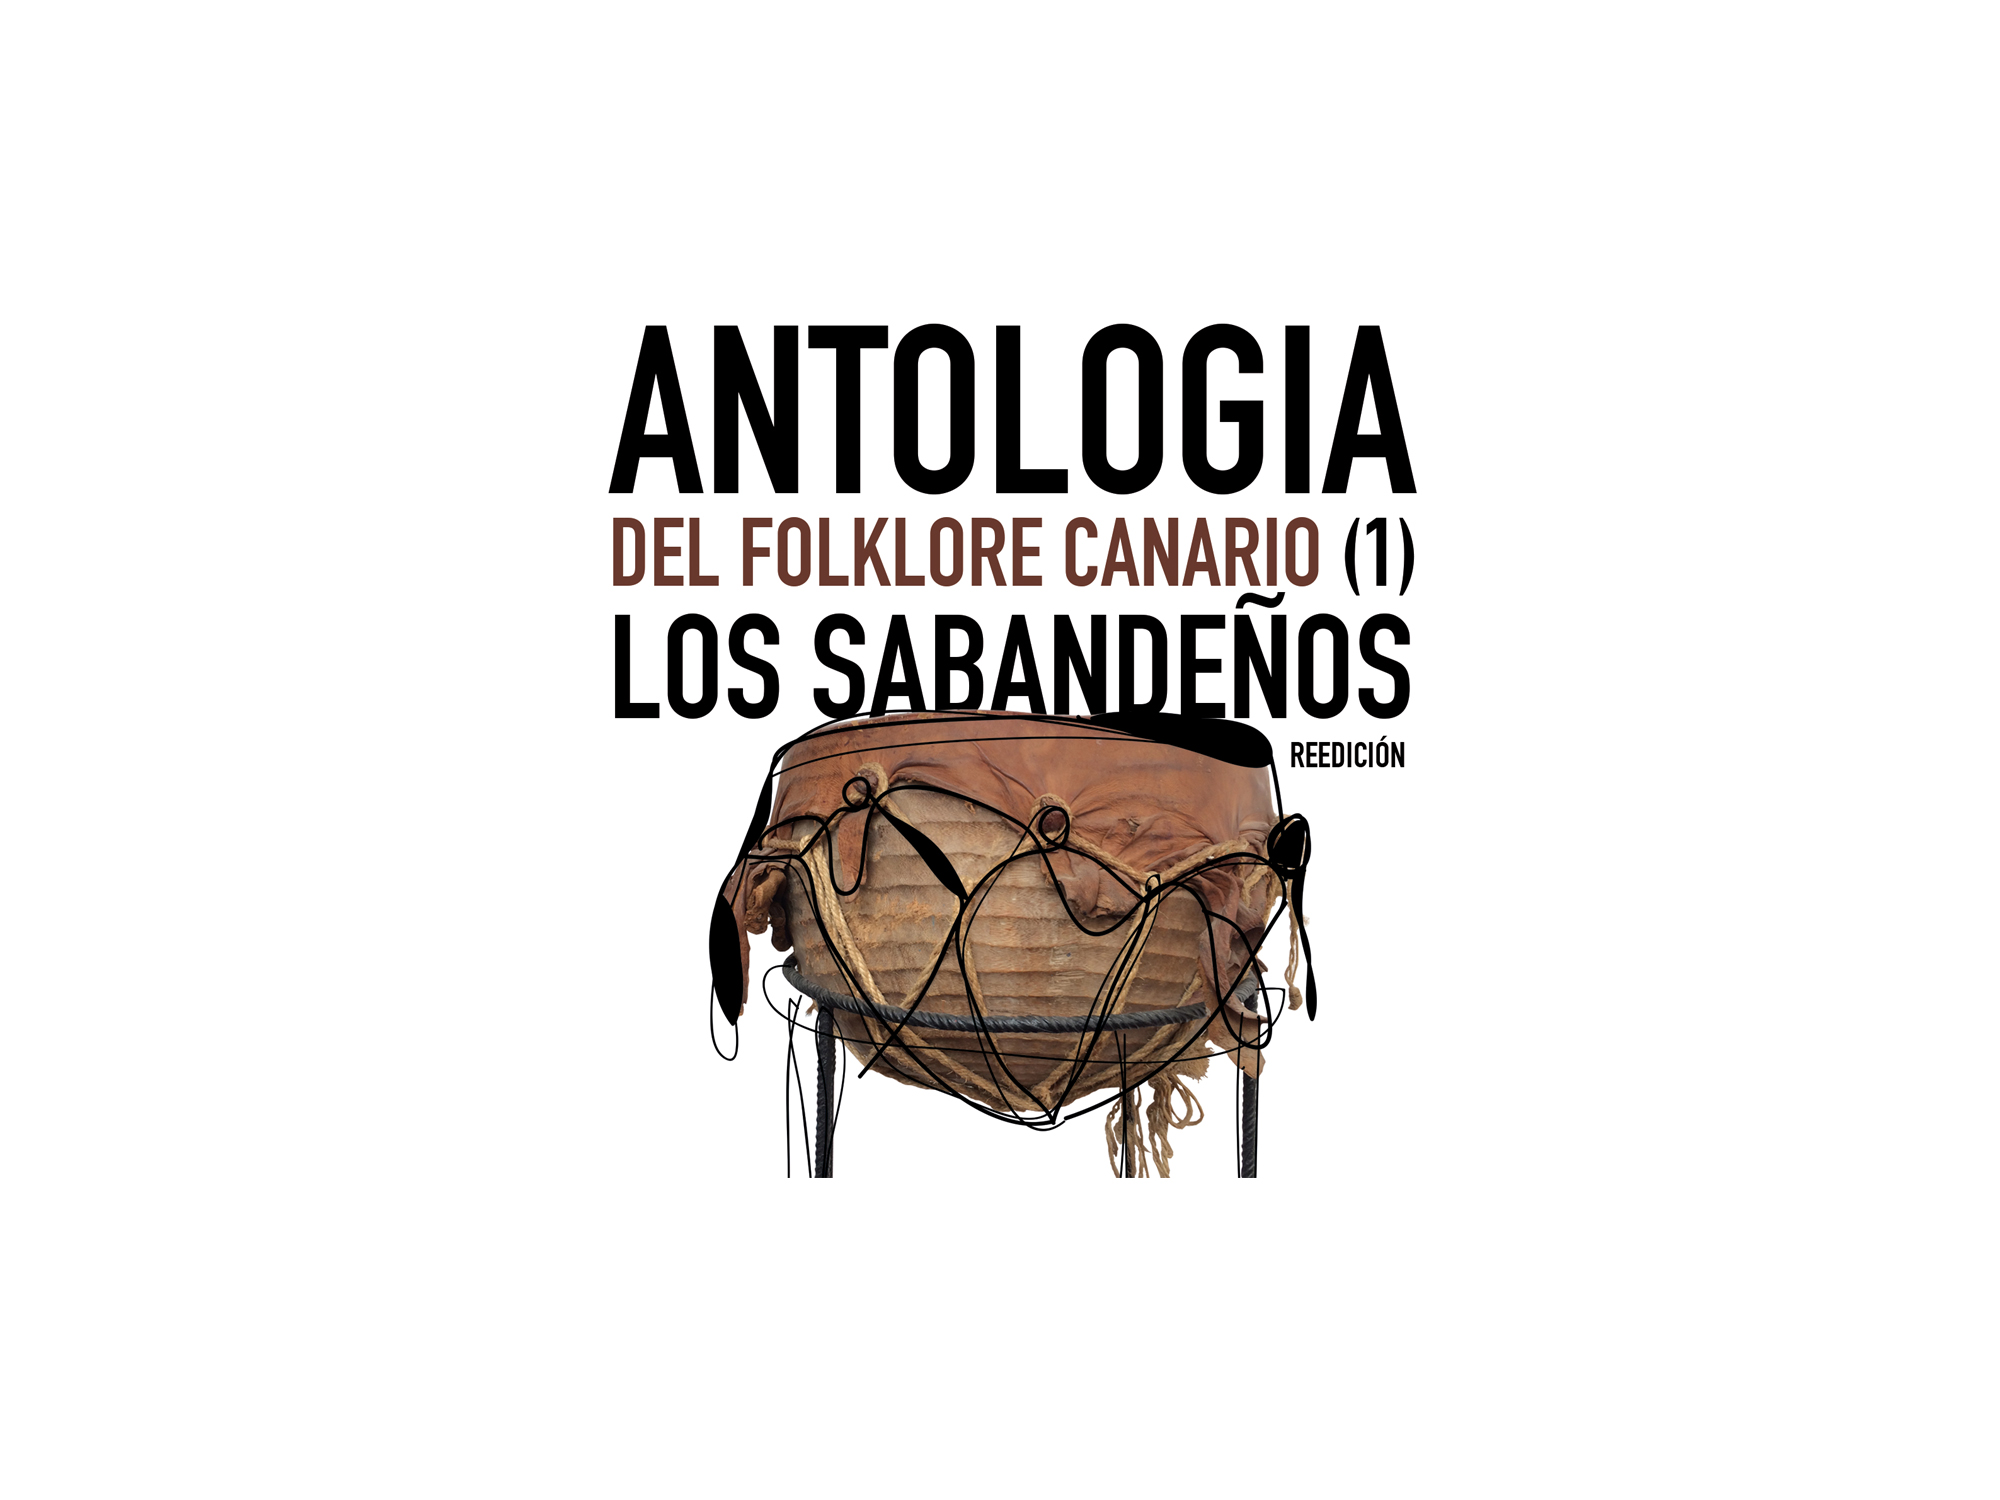 Antologia_1